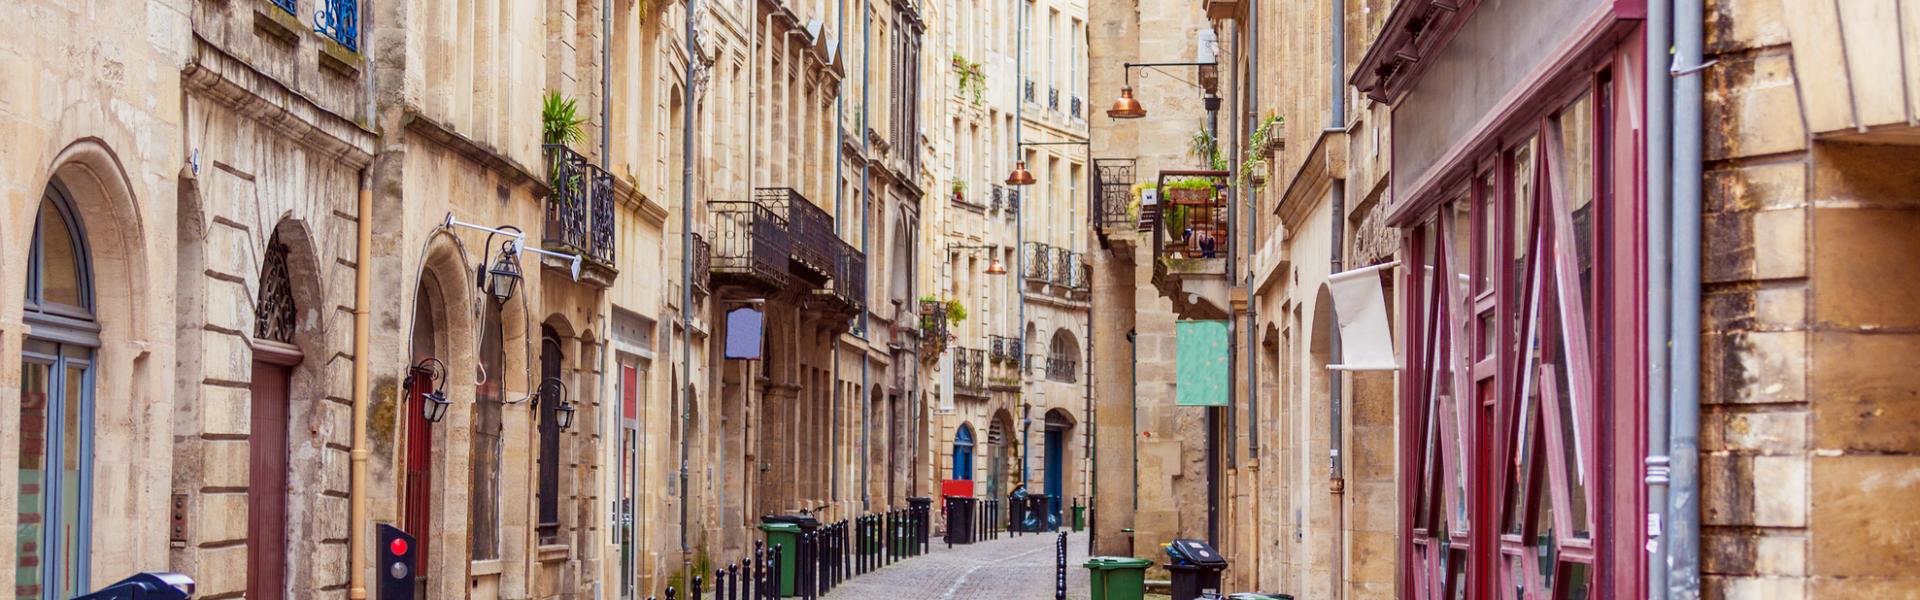 Vakantiehuizen en appartementen in Midden-Frankrijk - HomeToGo